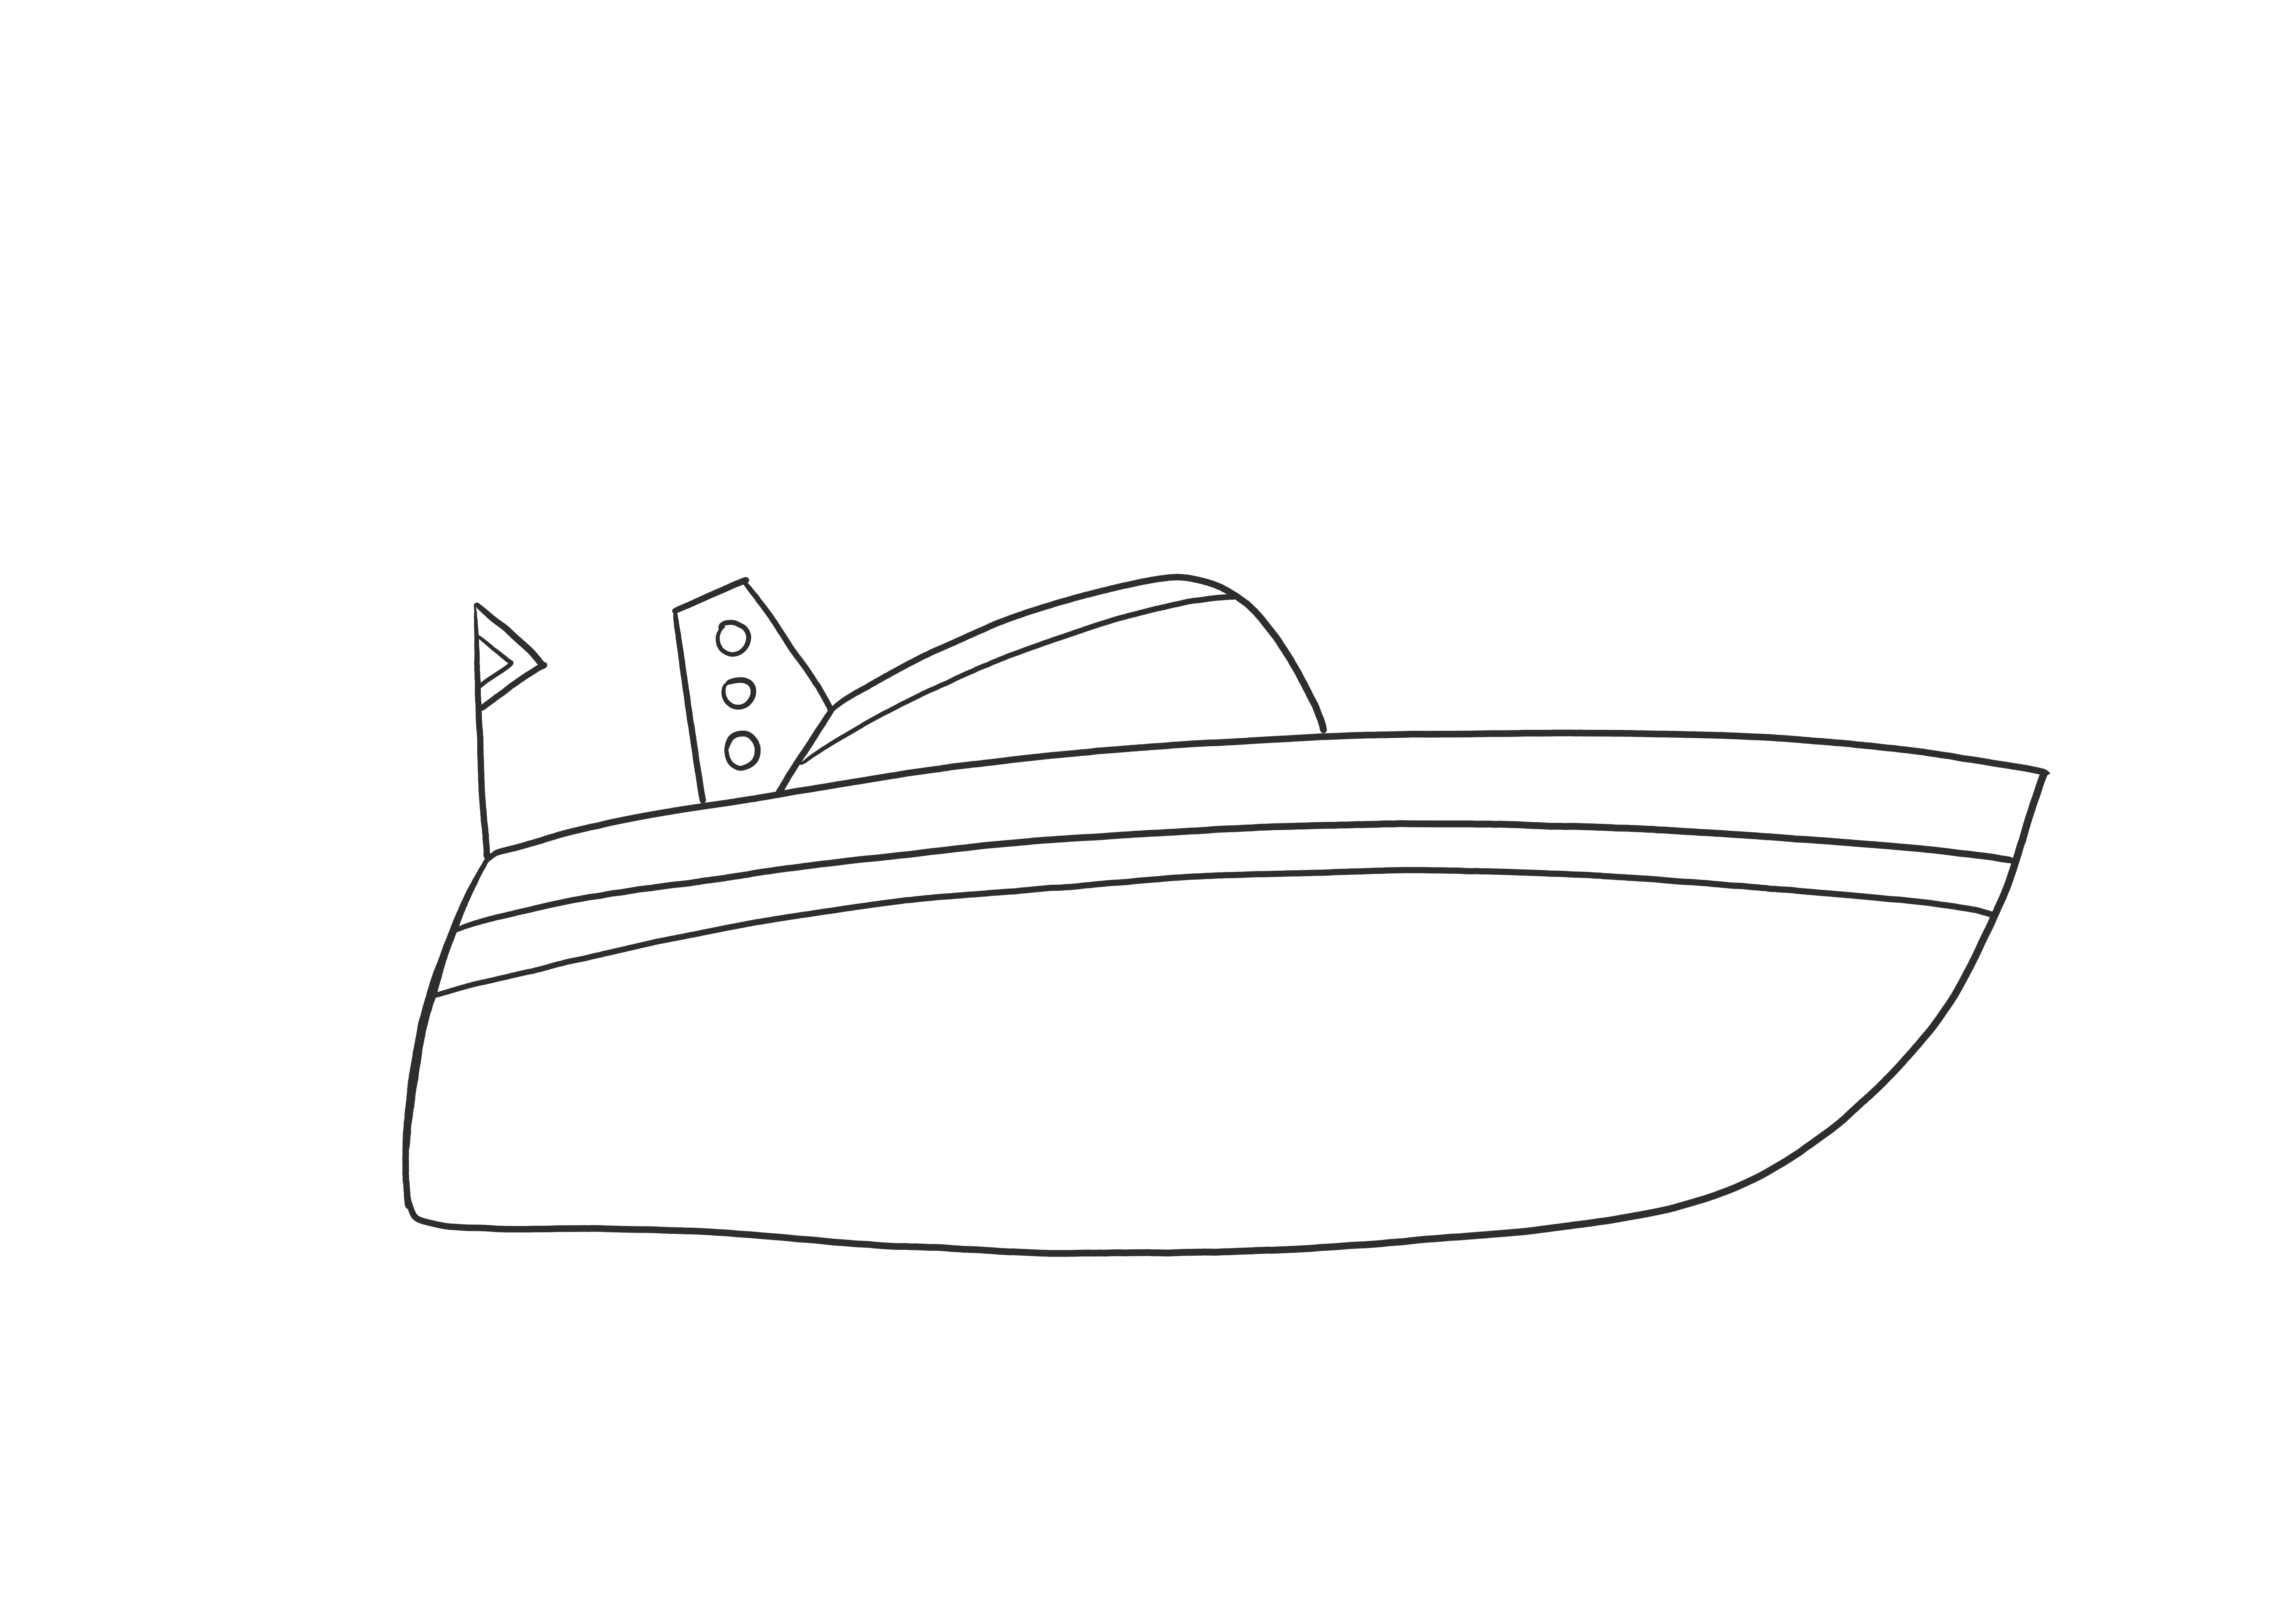 Super cooles Schnellboot für Bootsliebhaber zum kostenlosen Ausdrucken und Ausmalen